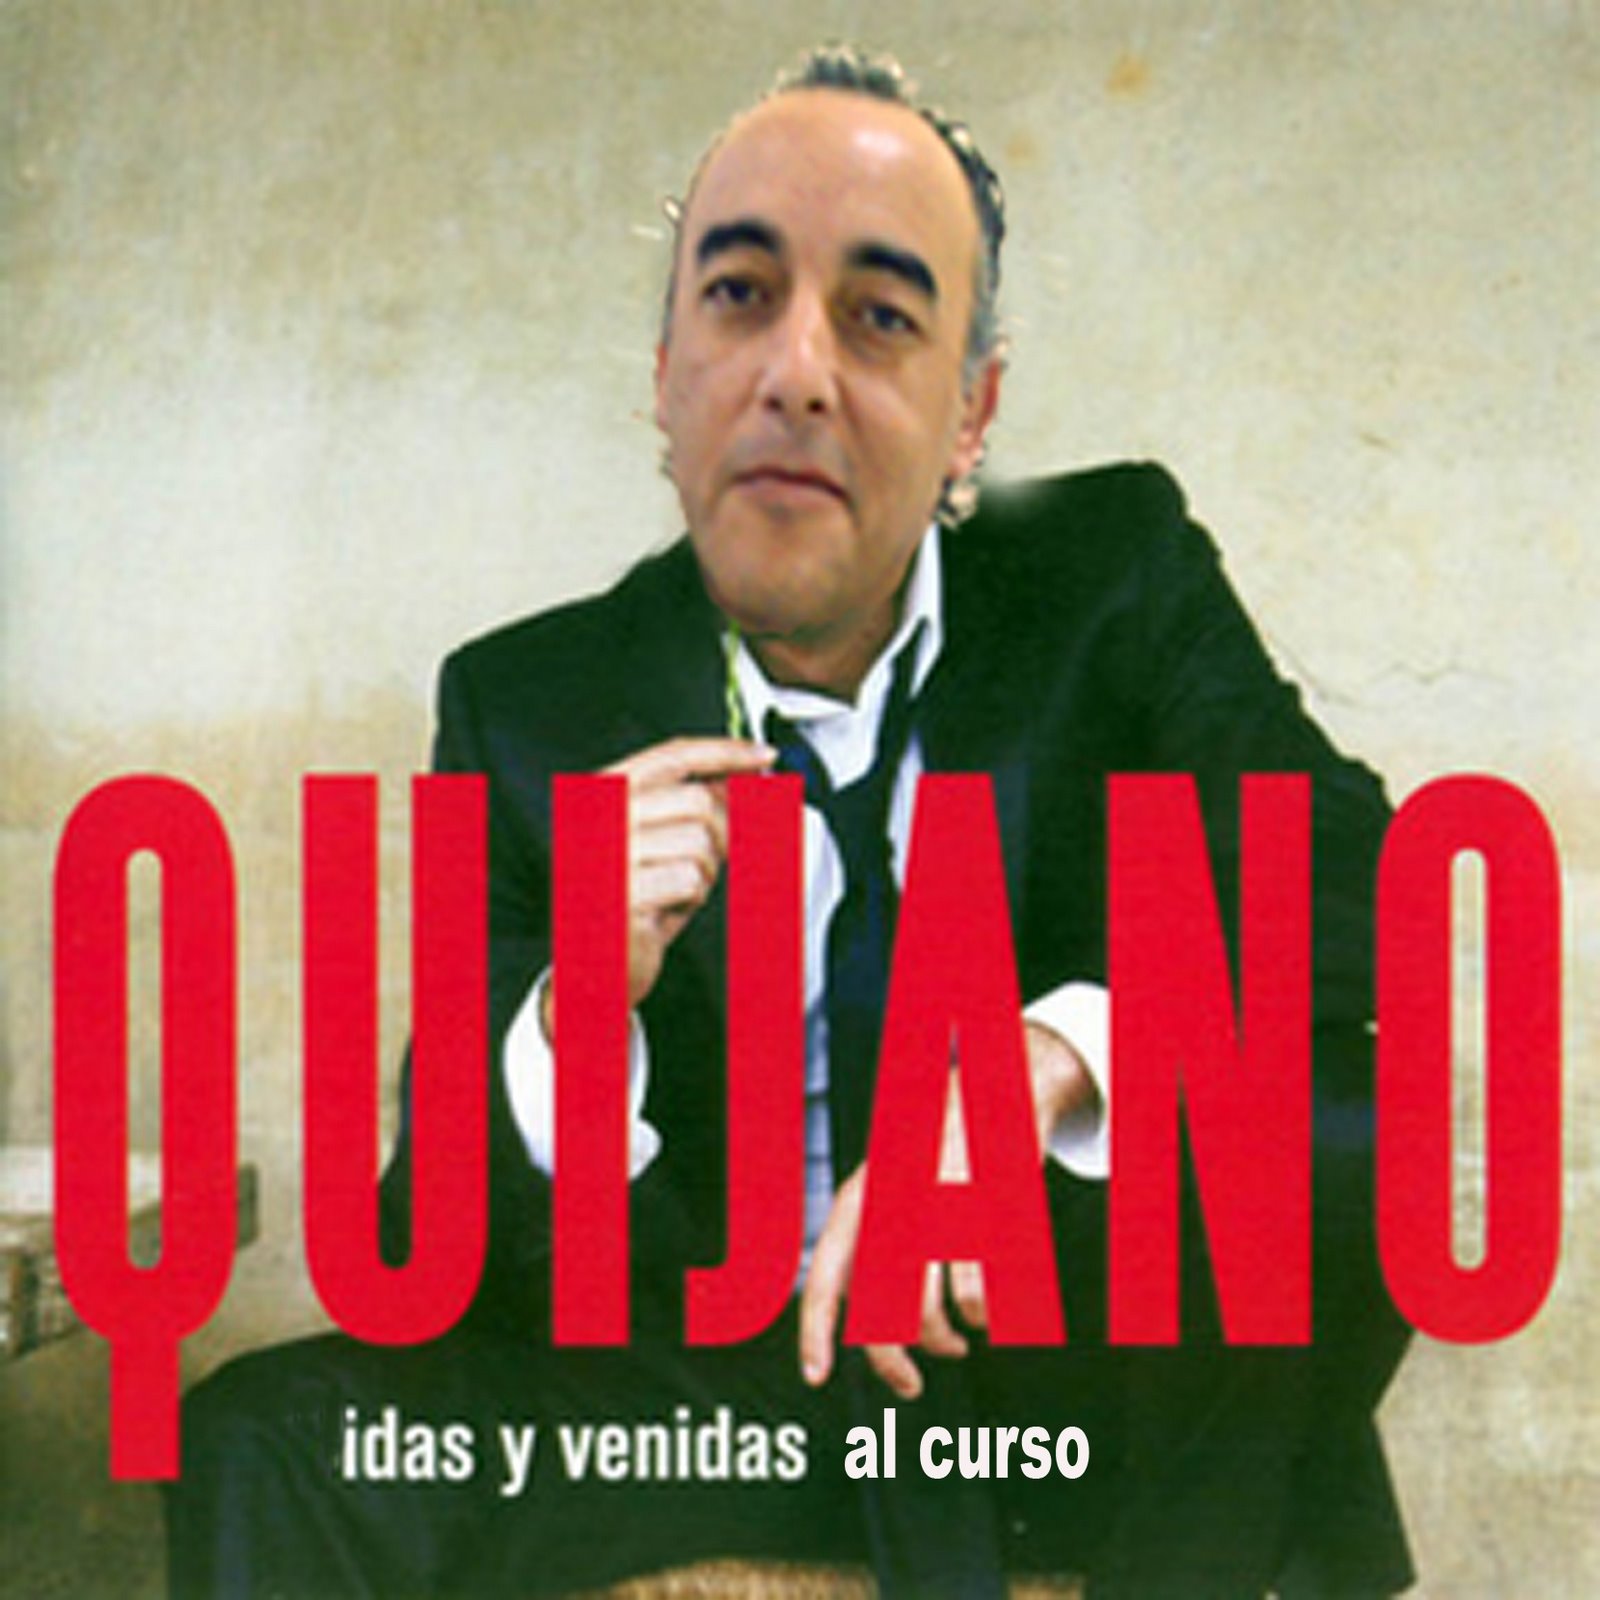 Nuevo disco de Café Quijano